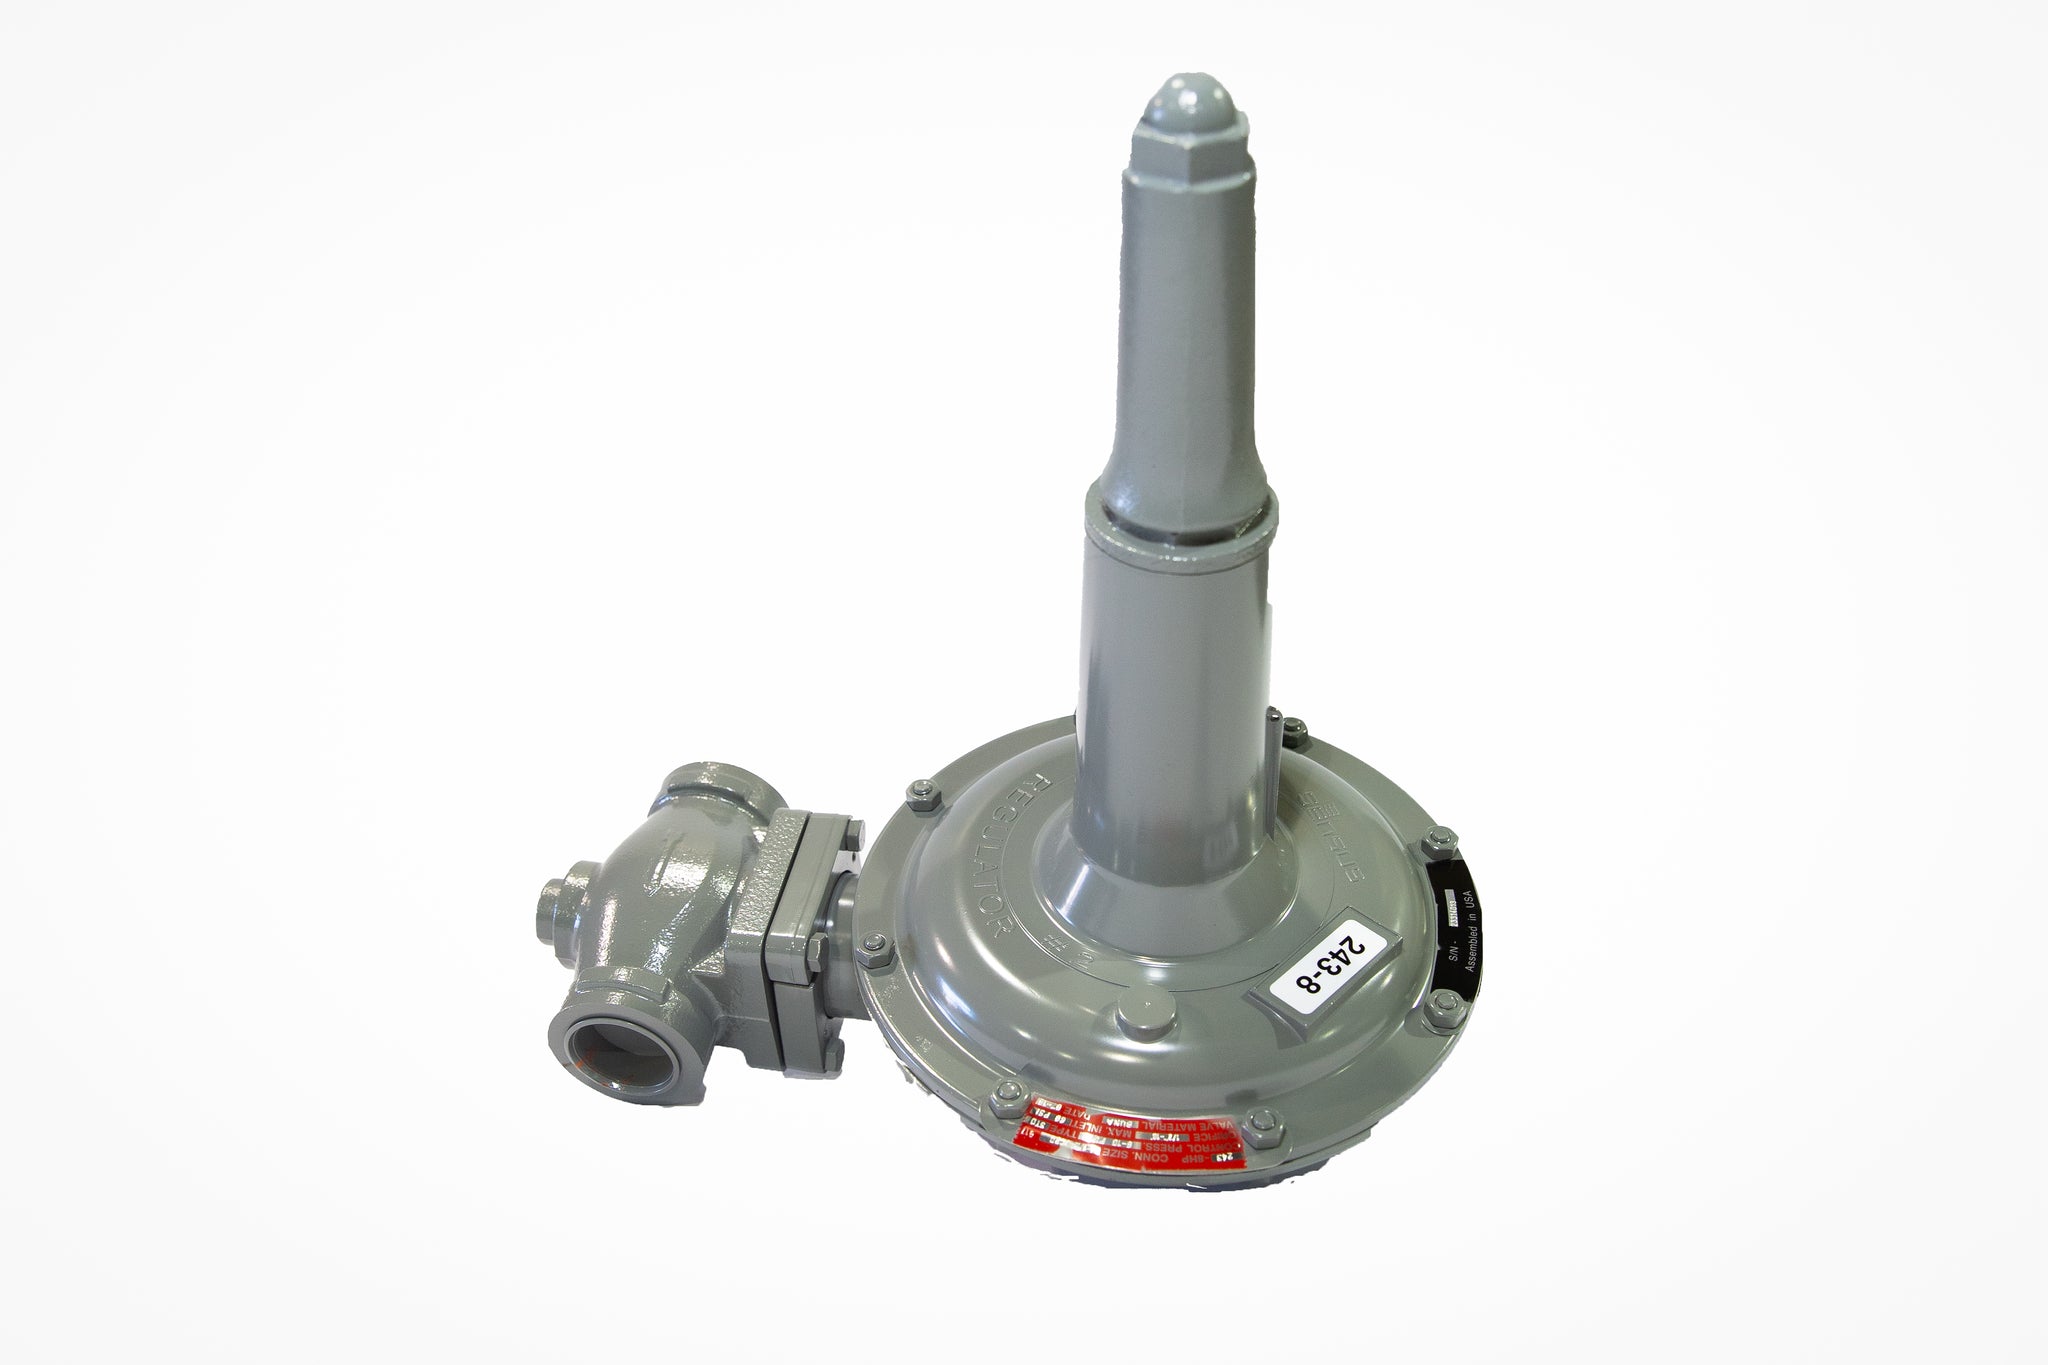 Sensus 243-8HP, 1-1/4"NPT gas regulator w/ 3/8" orifice, Cadmium & white spring(6-10 PSIG)